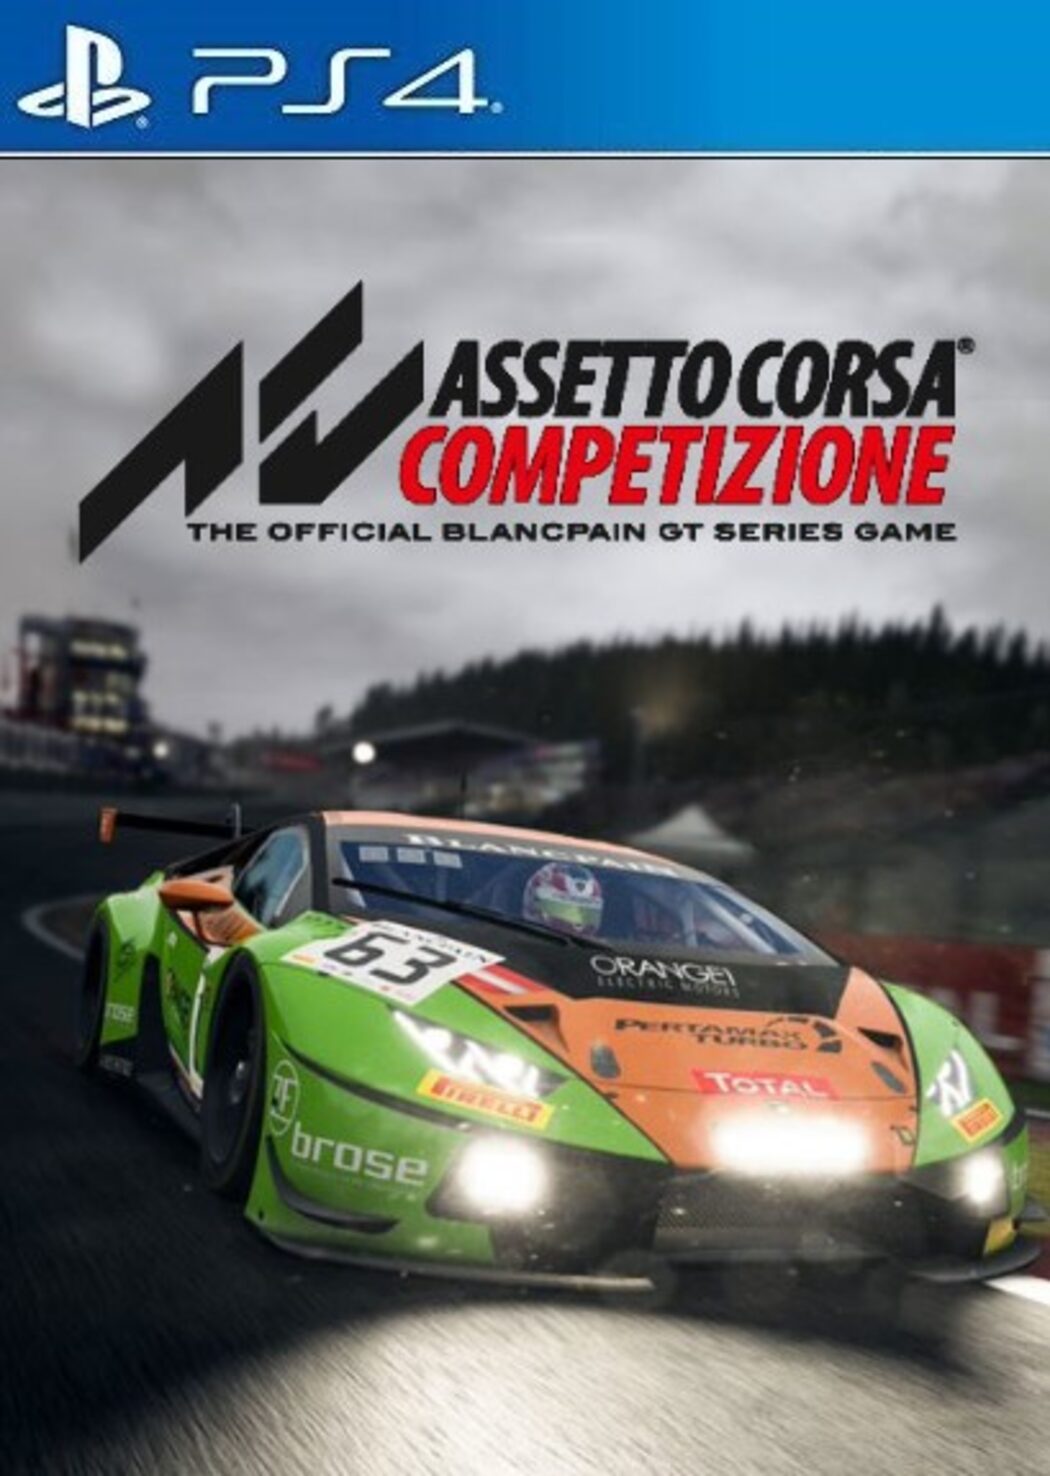 Assetto Corsa Competizione (PS4)